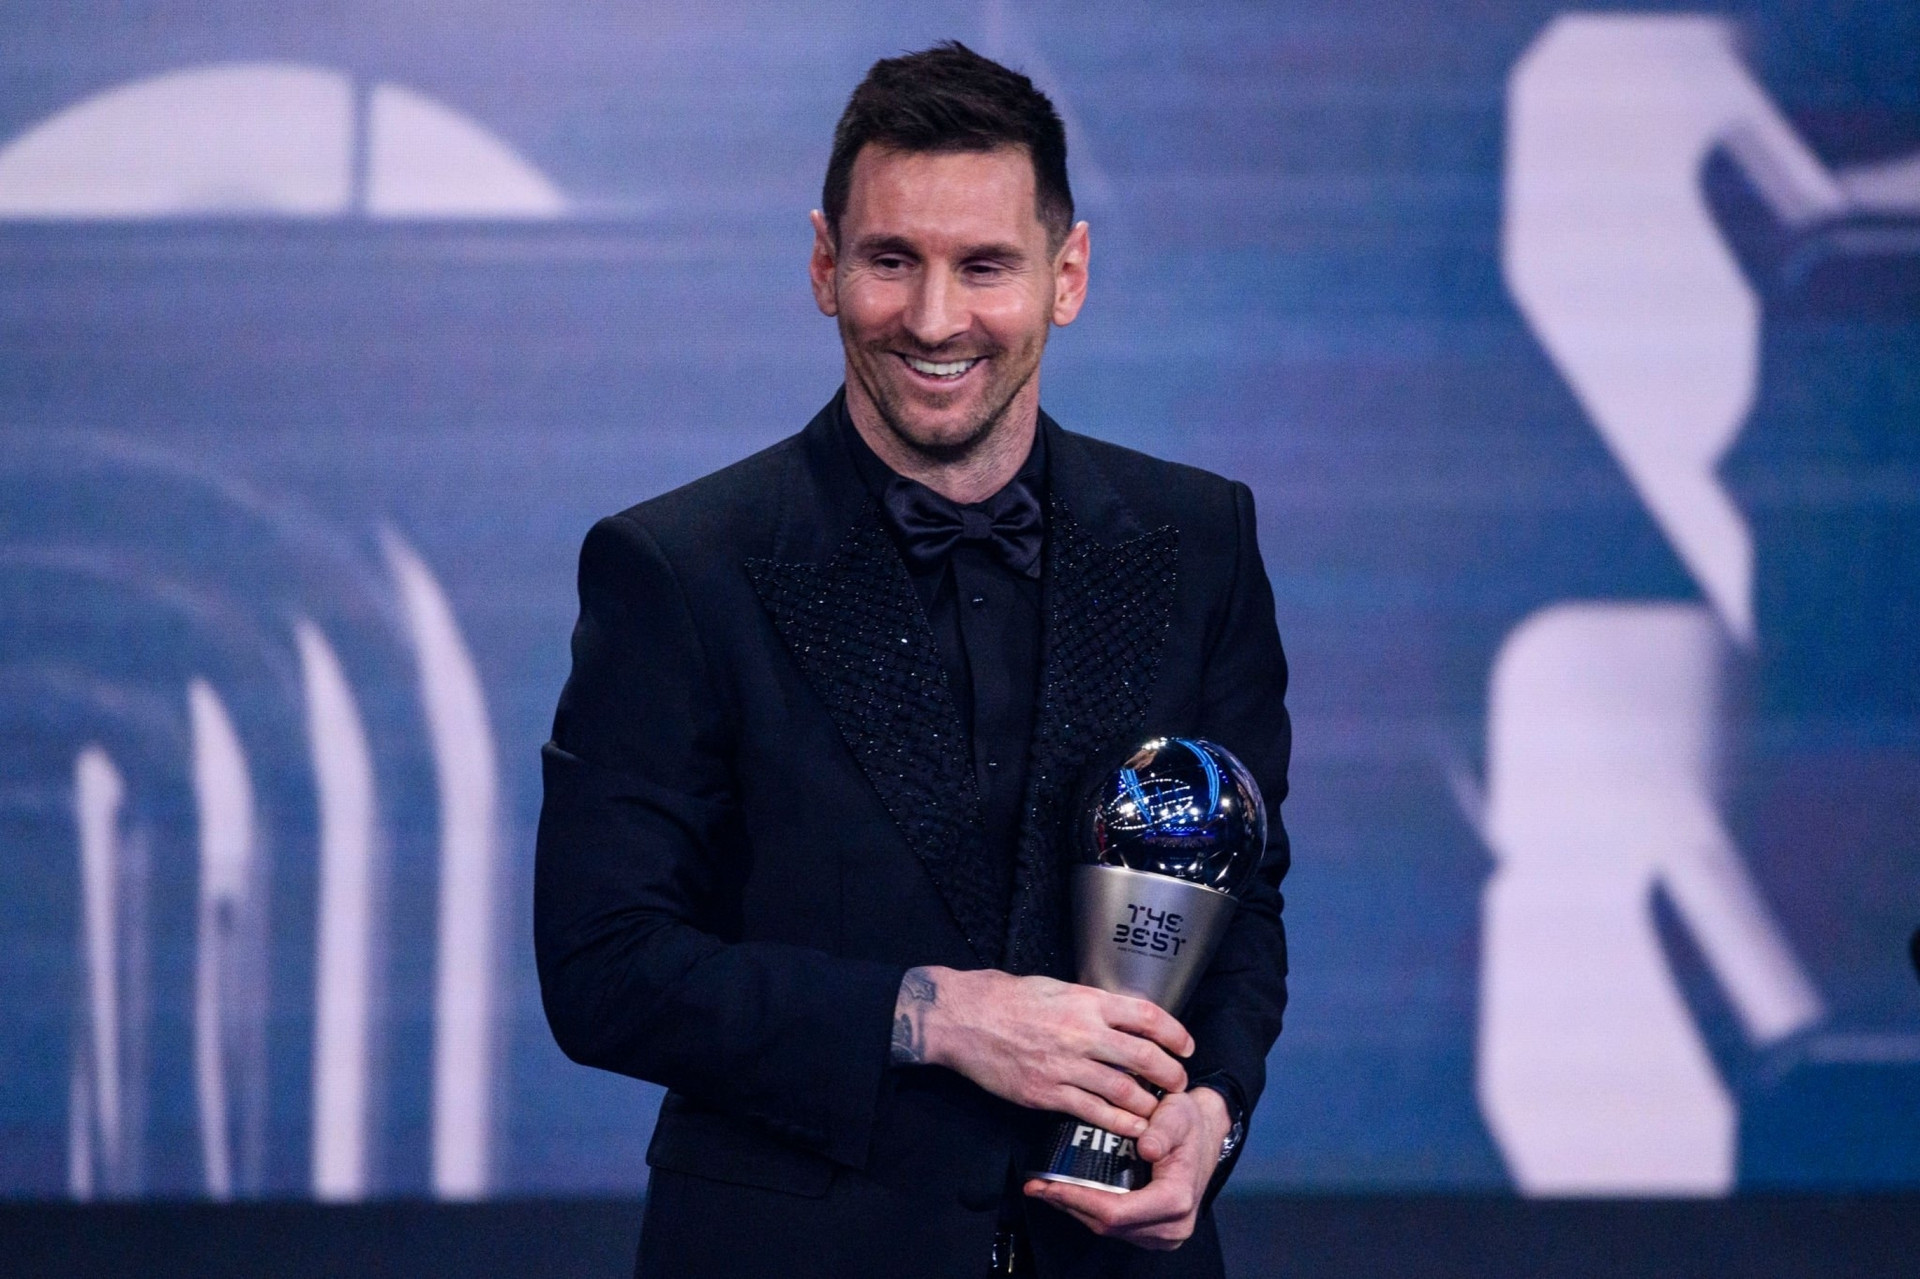 Messi giành giải cầu thủ xuất sắc nhất thế giới - 1